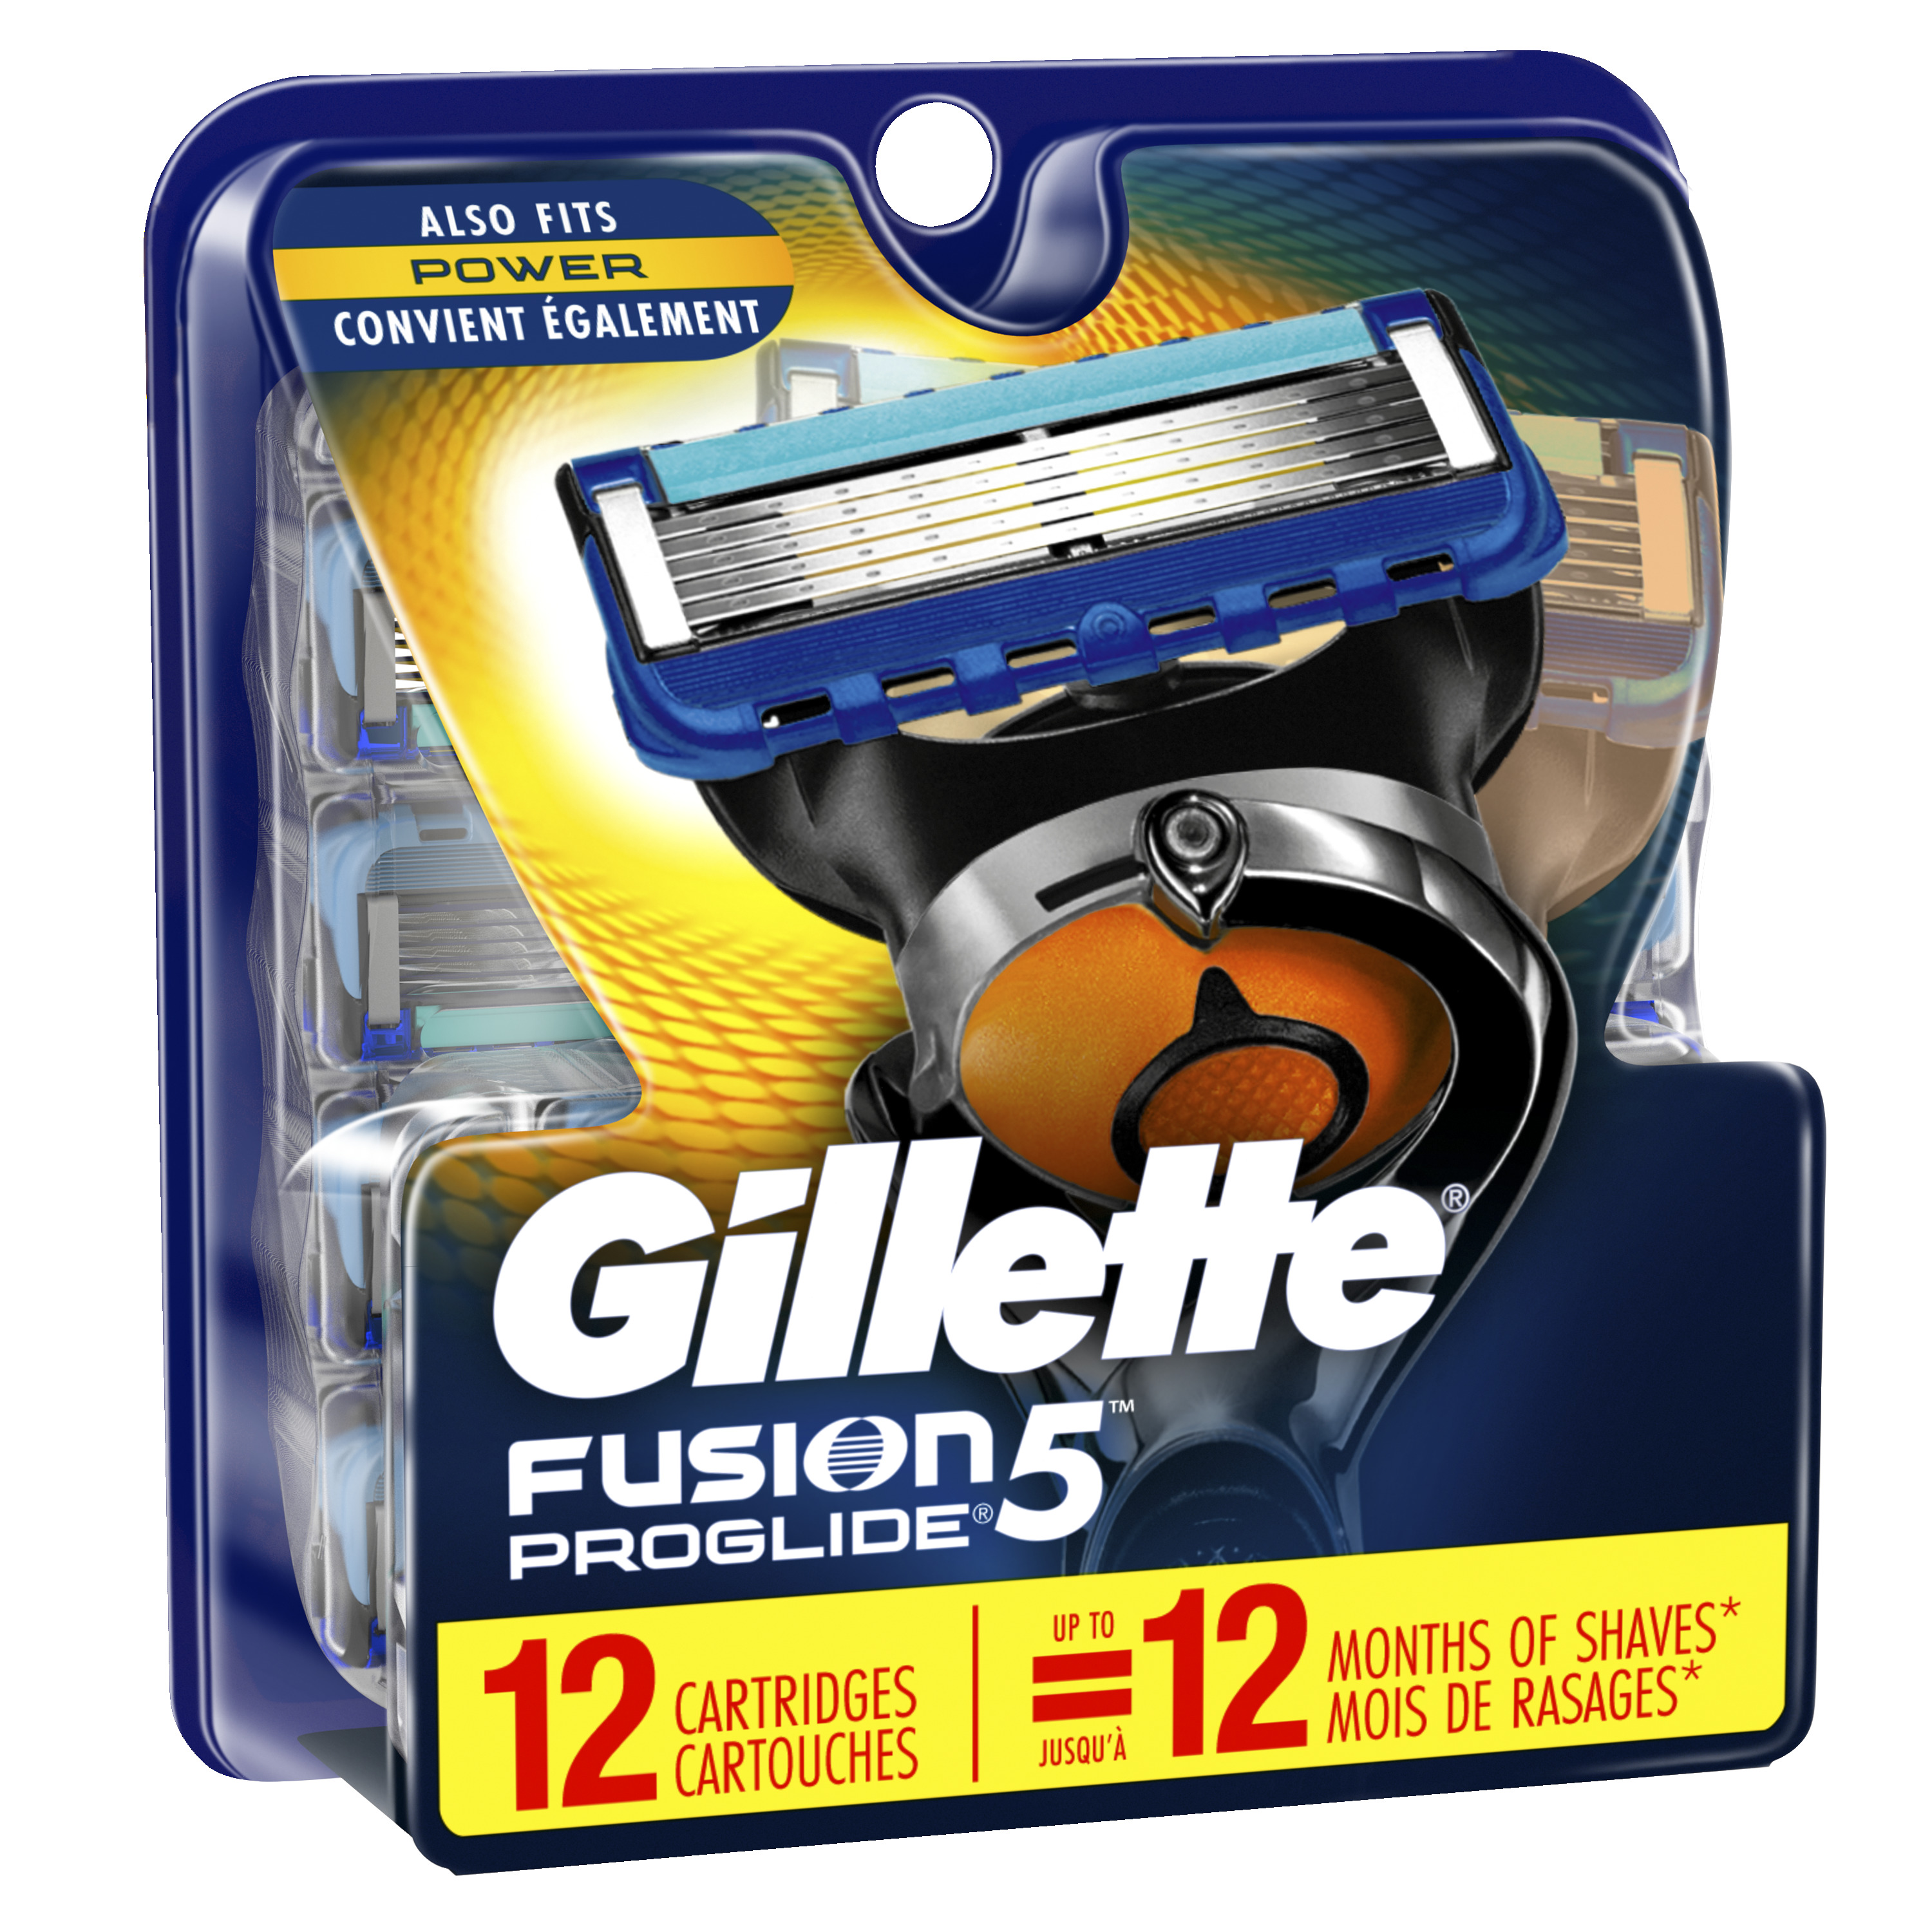 Gillette Fusion5 ProGlide Men's Razor Blades 12 Refills - image 2 of 9